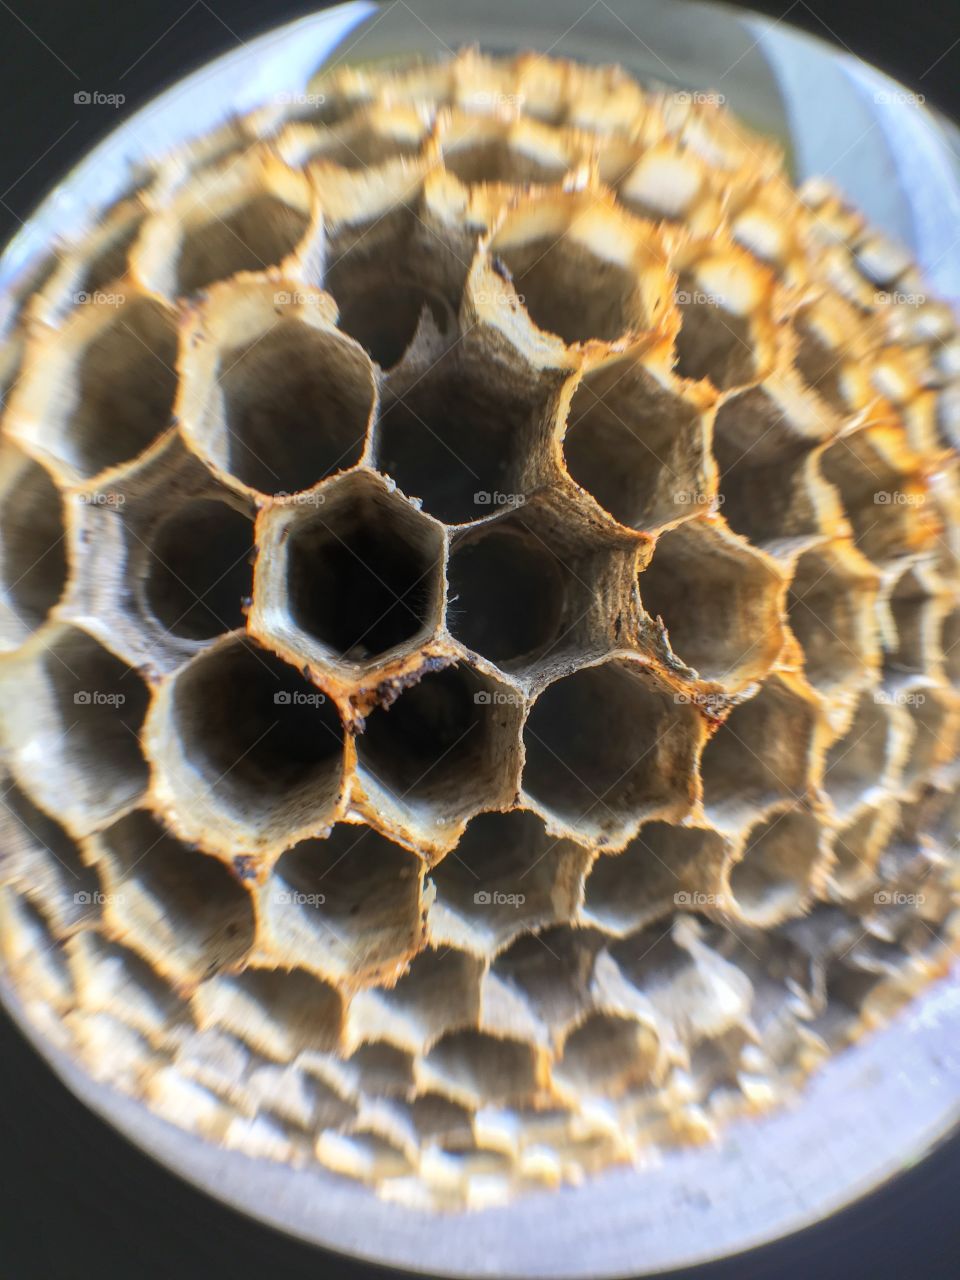 Wasp nest 